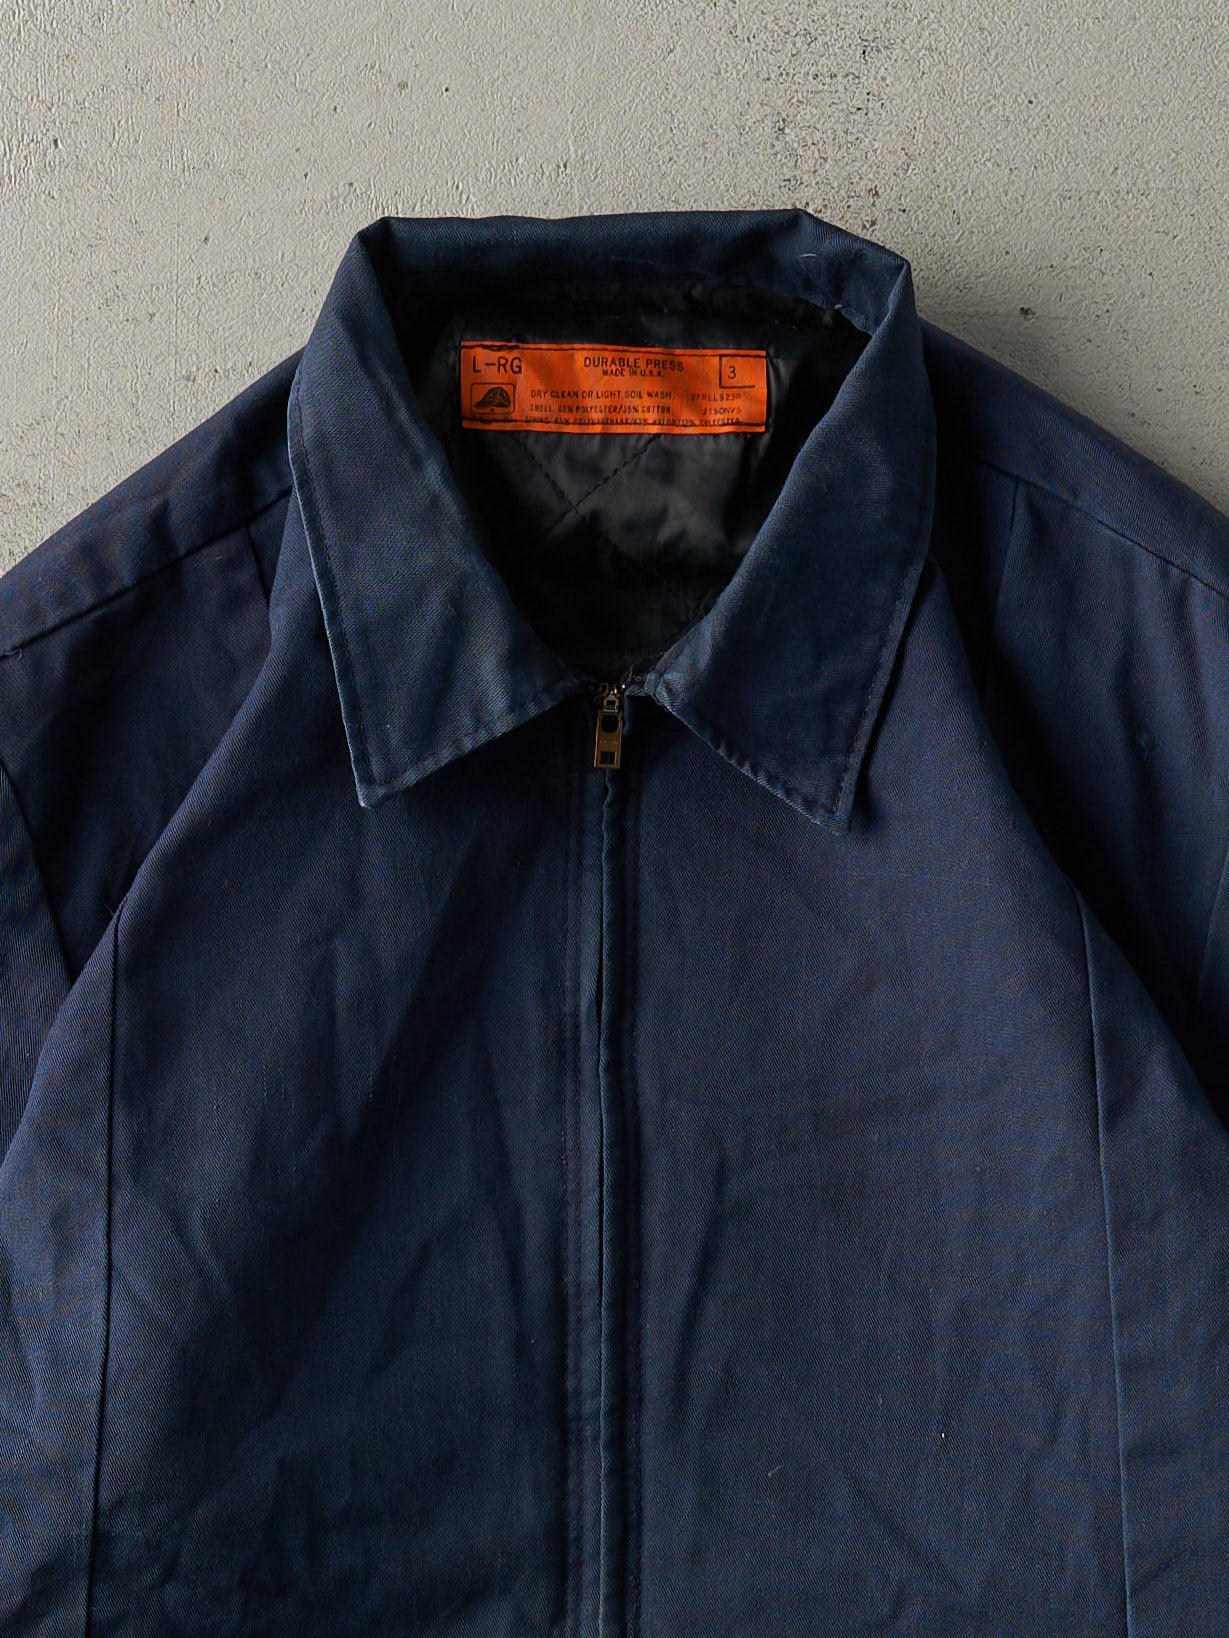 Vintage 80s Navy Blue Blank Work Jacket (M)